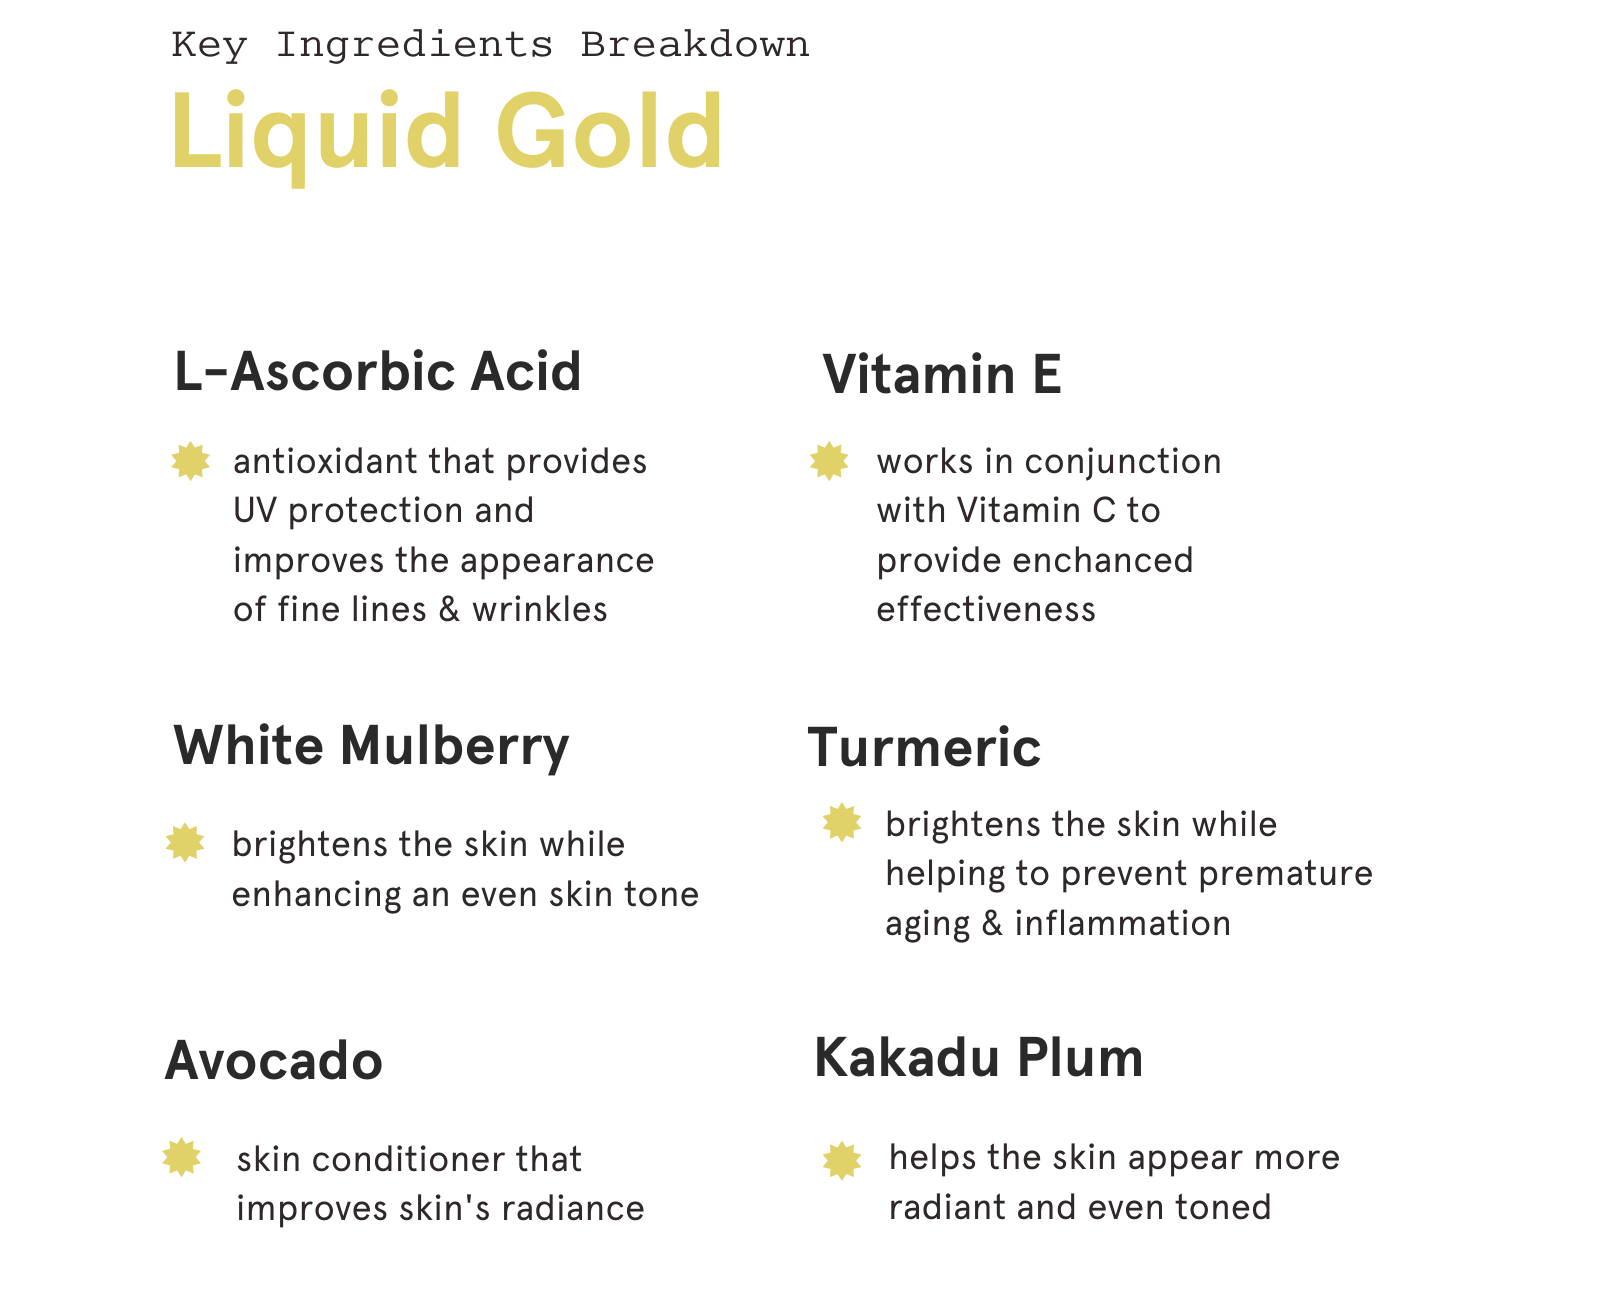 Liquid Gold Ingredient Breakdown Infographic